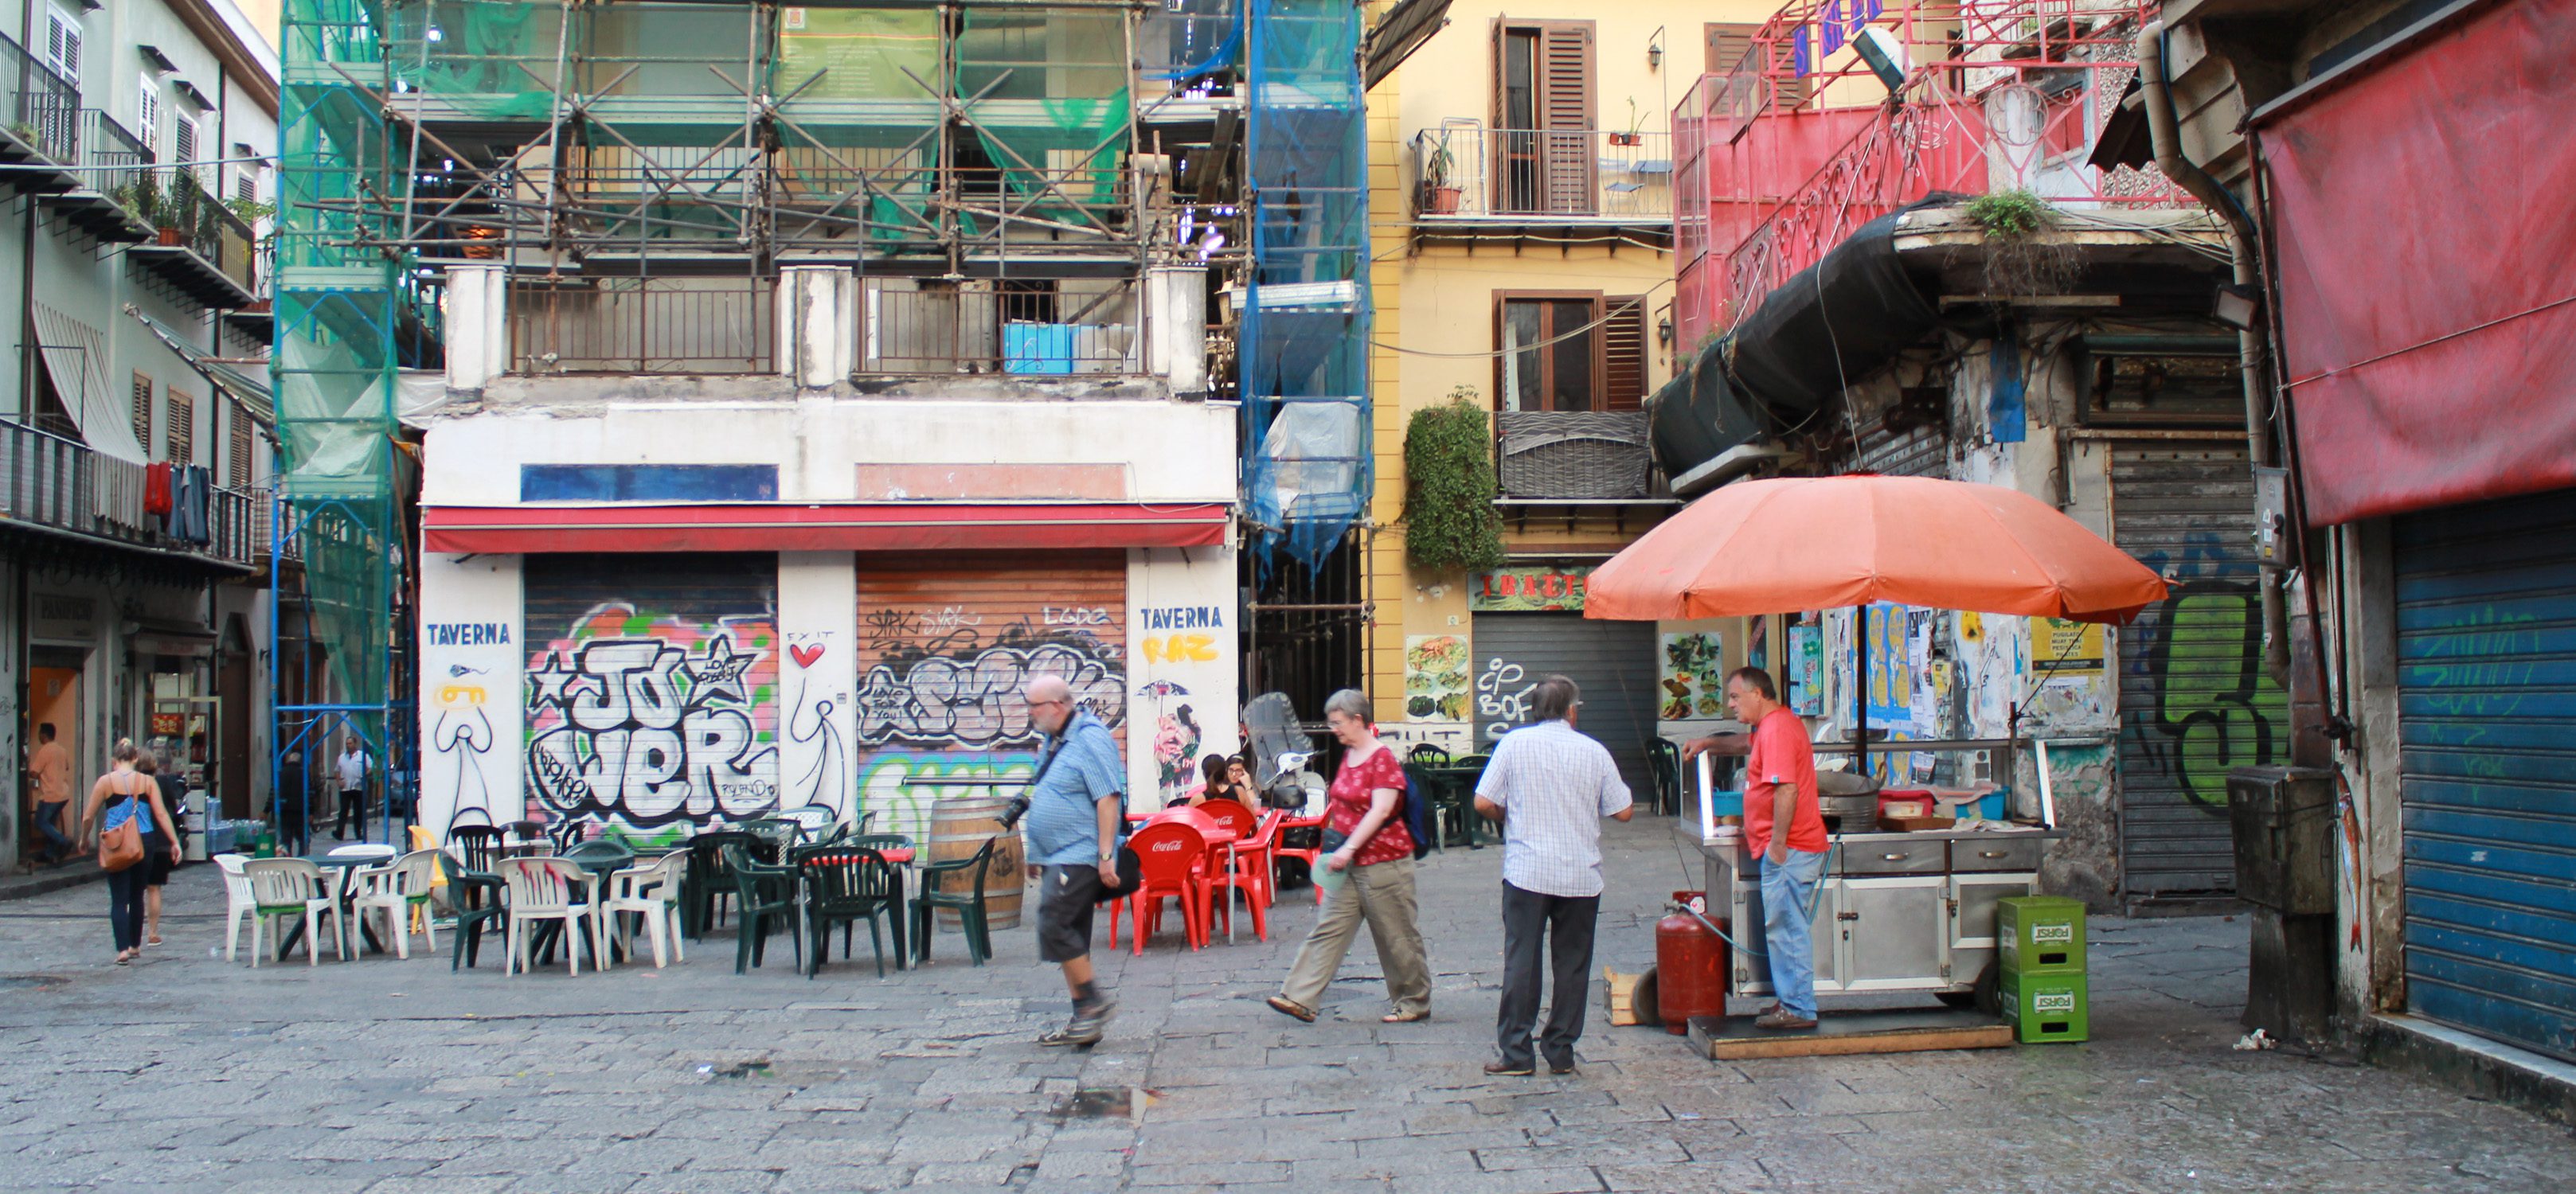 Palermo markets Vucceria